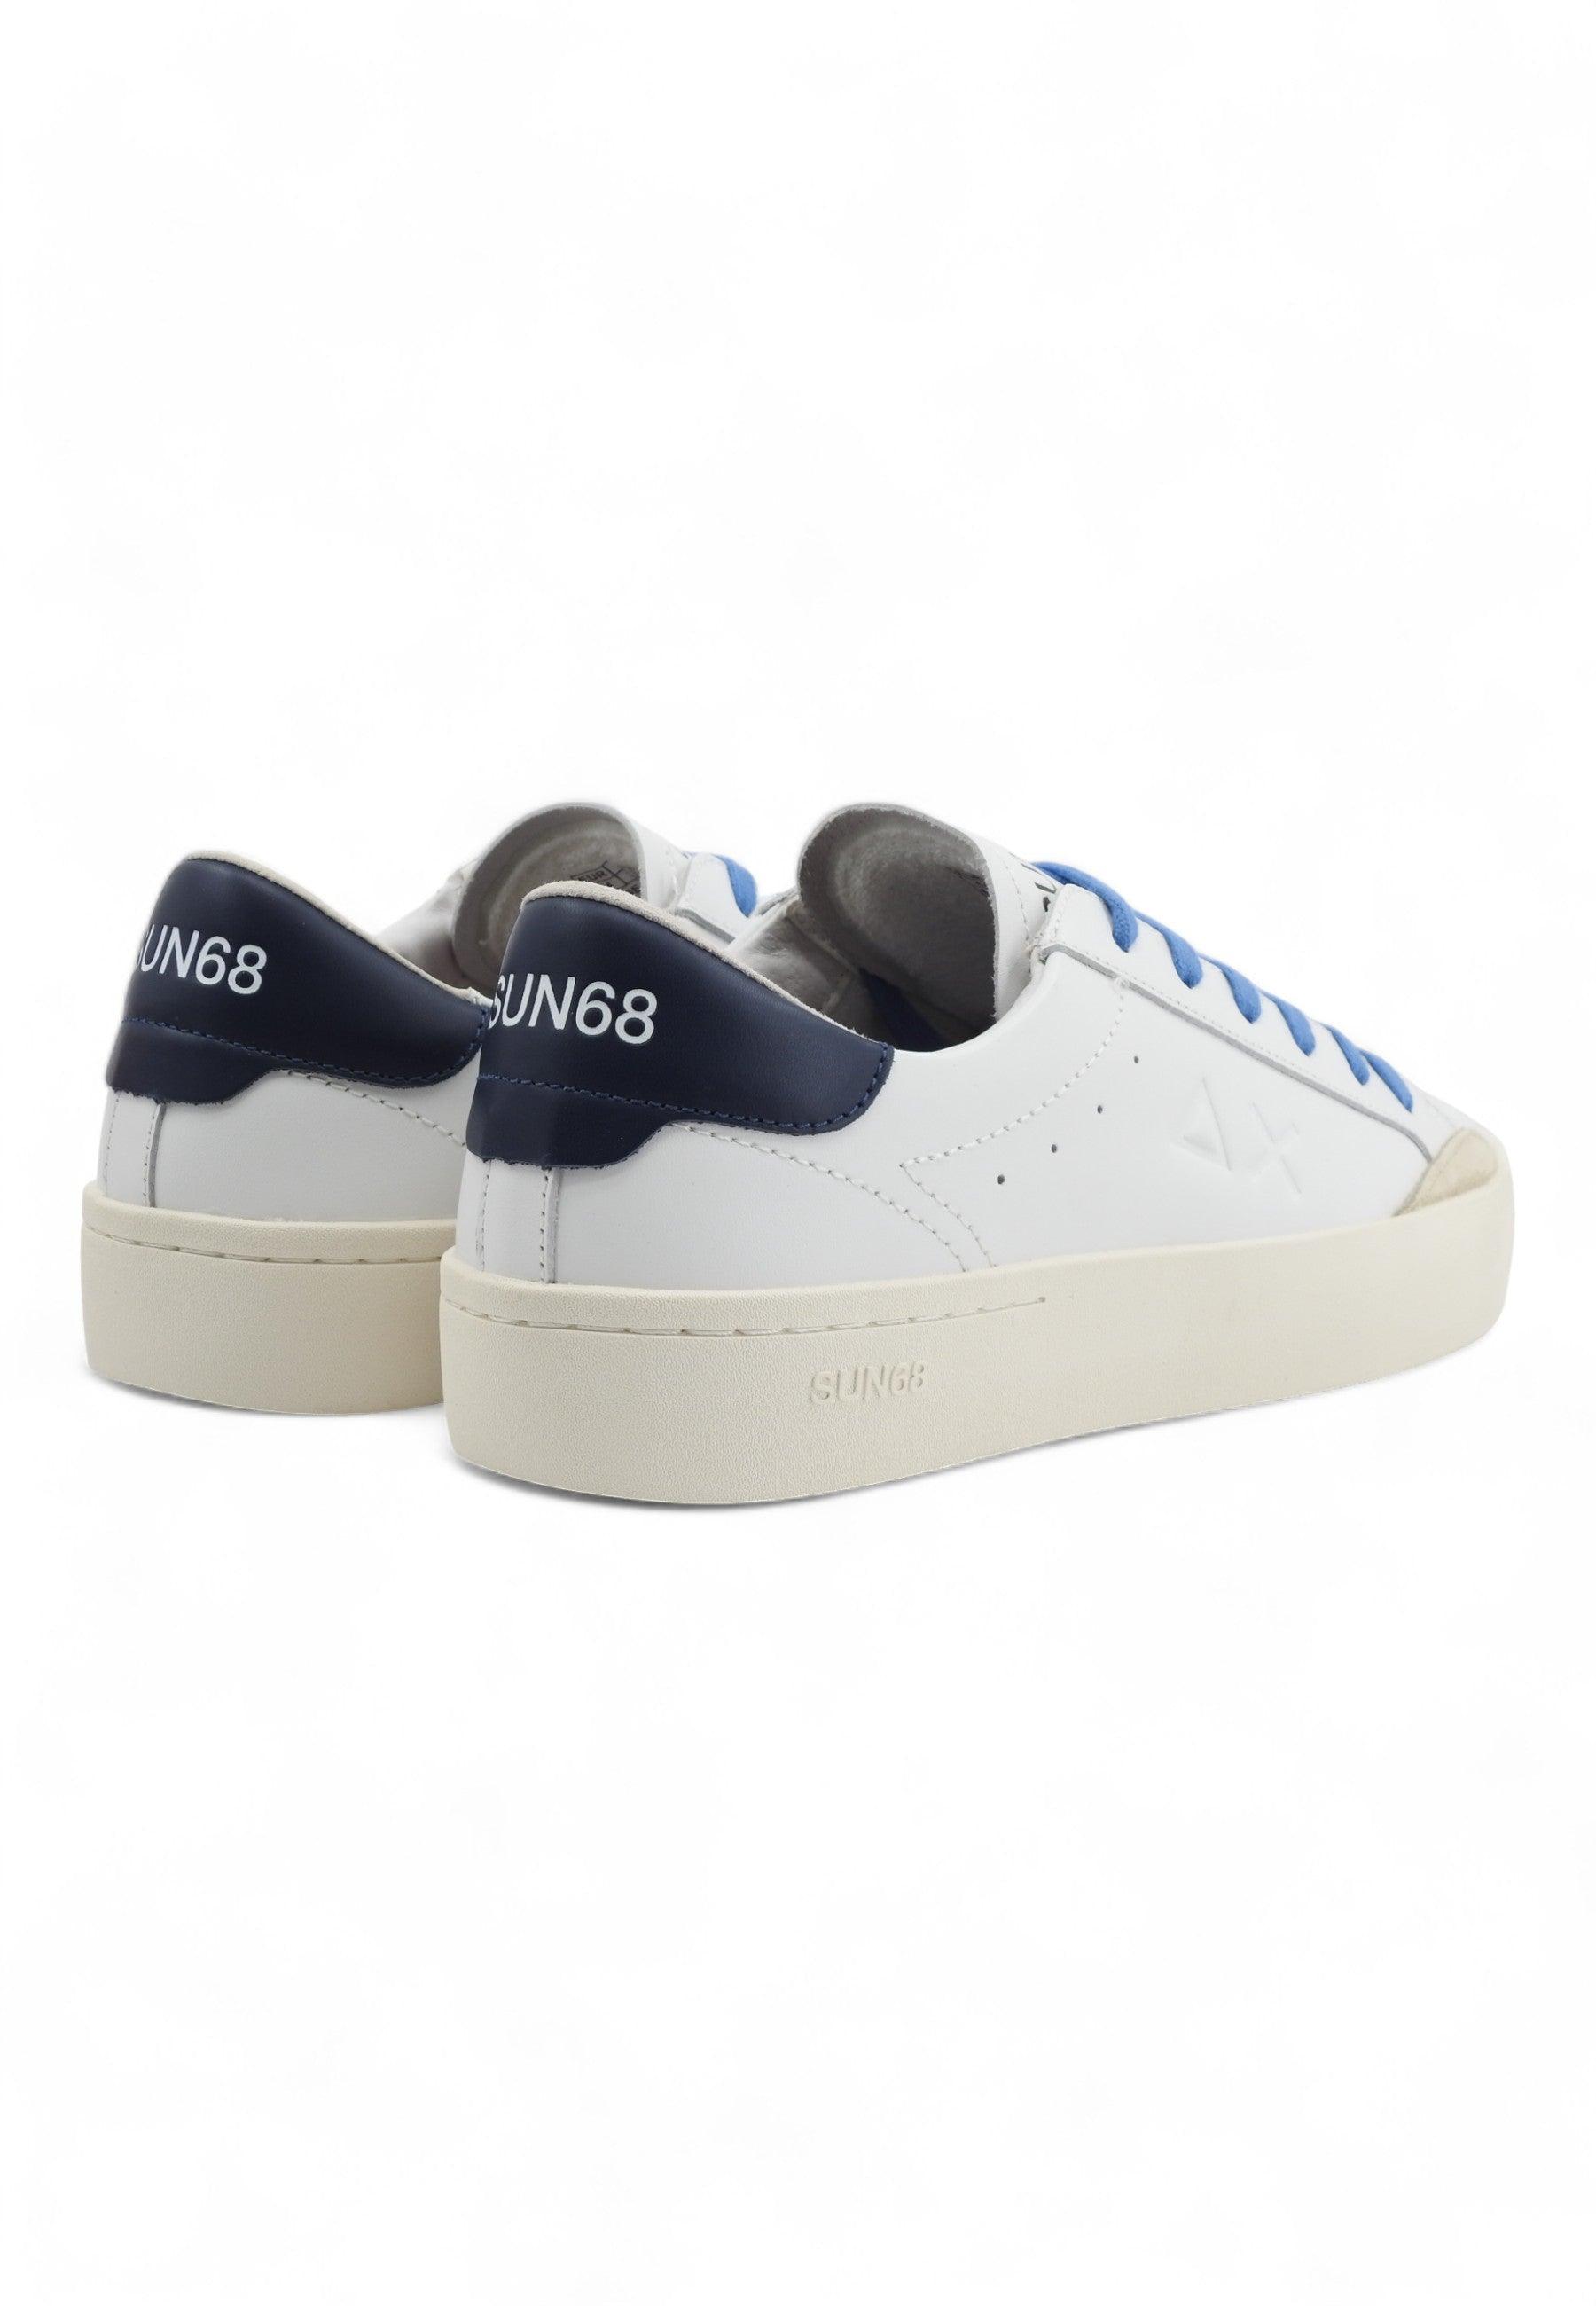 SUN68 Street Leather Sneaker Uomo Bianco Navy Blue Z34140 - Sandrini Calzature e Abbigliamento